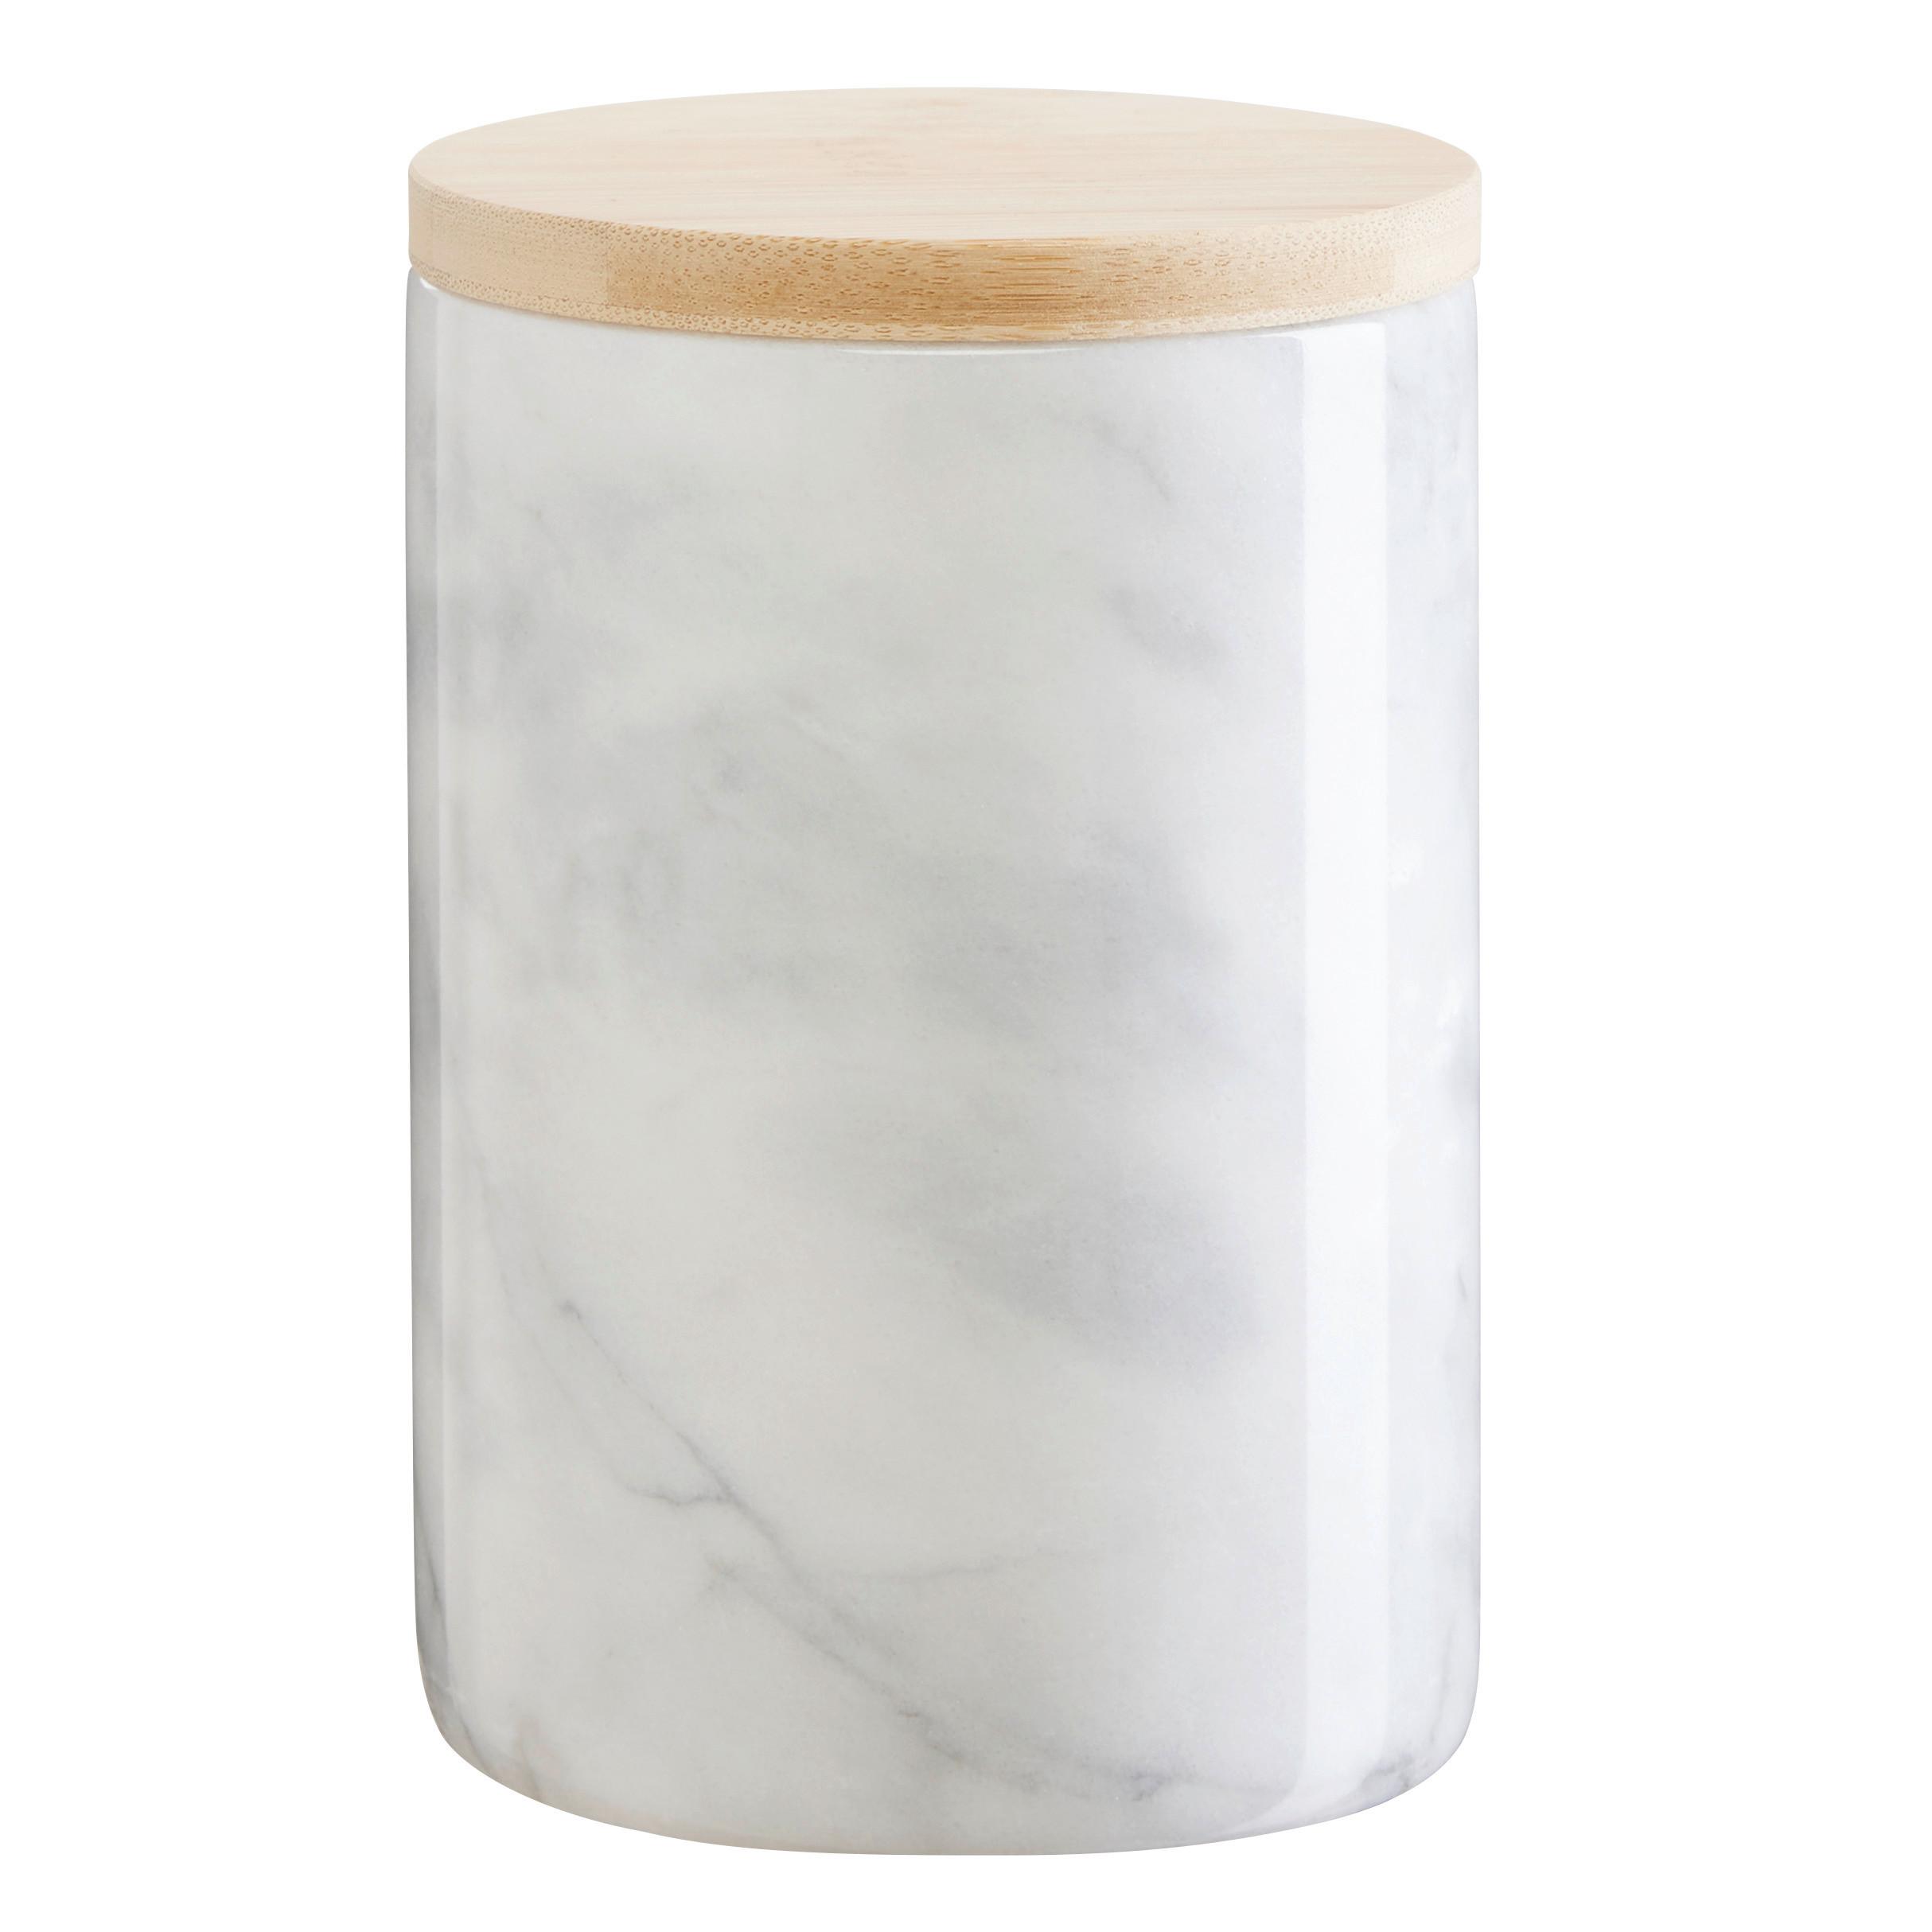 Vorratsdose Marble S in Weiß ca. 400ml - Weiß, MODERN, Holz/Kunststoff (9/12,5cm) - Premium Living